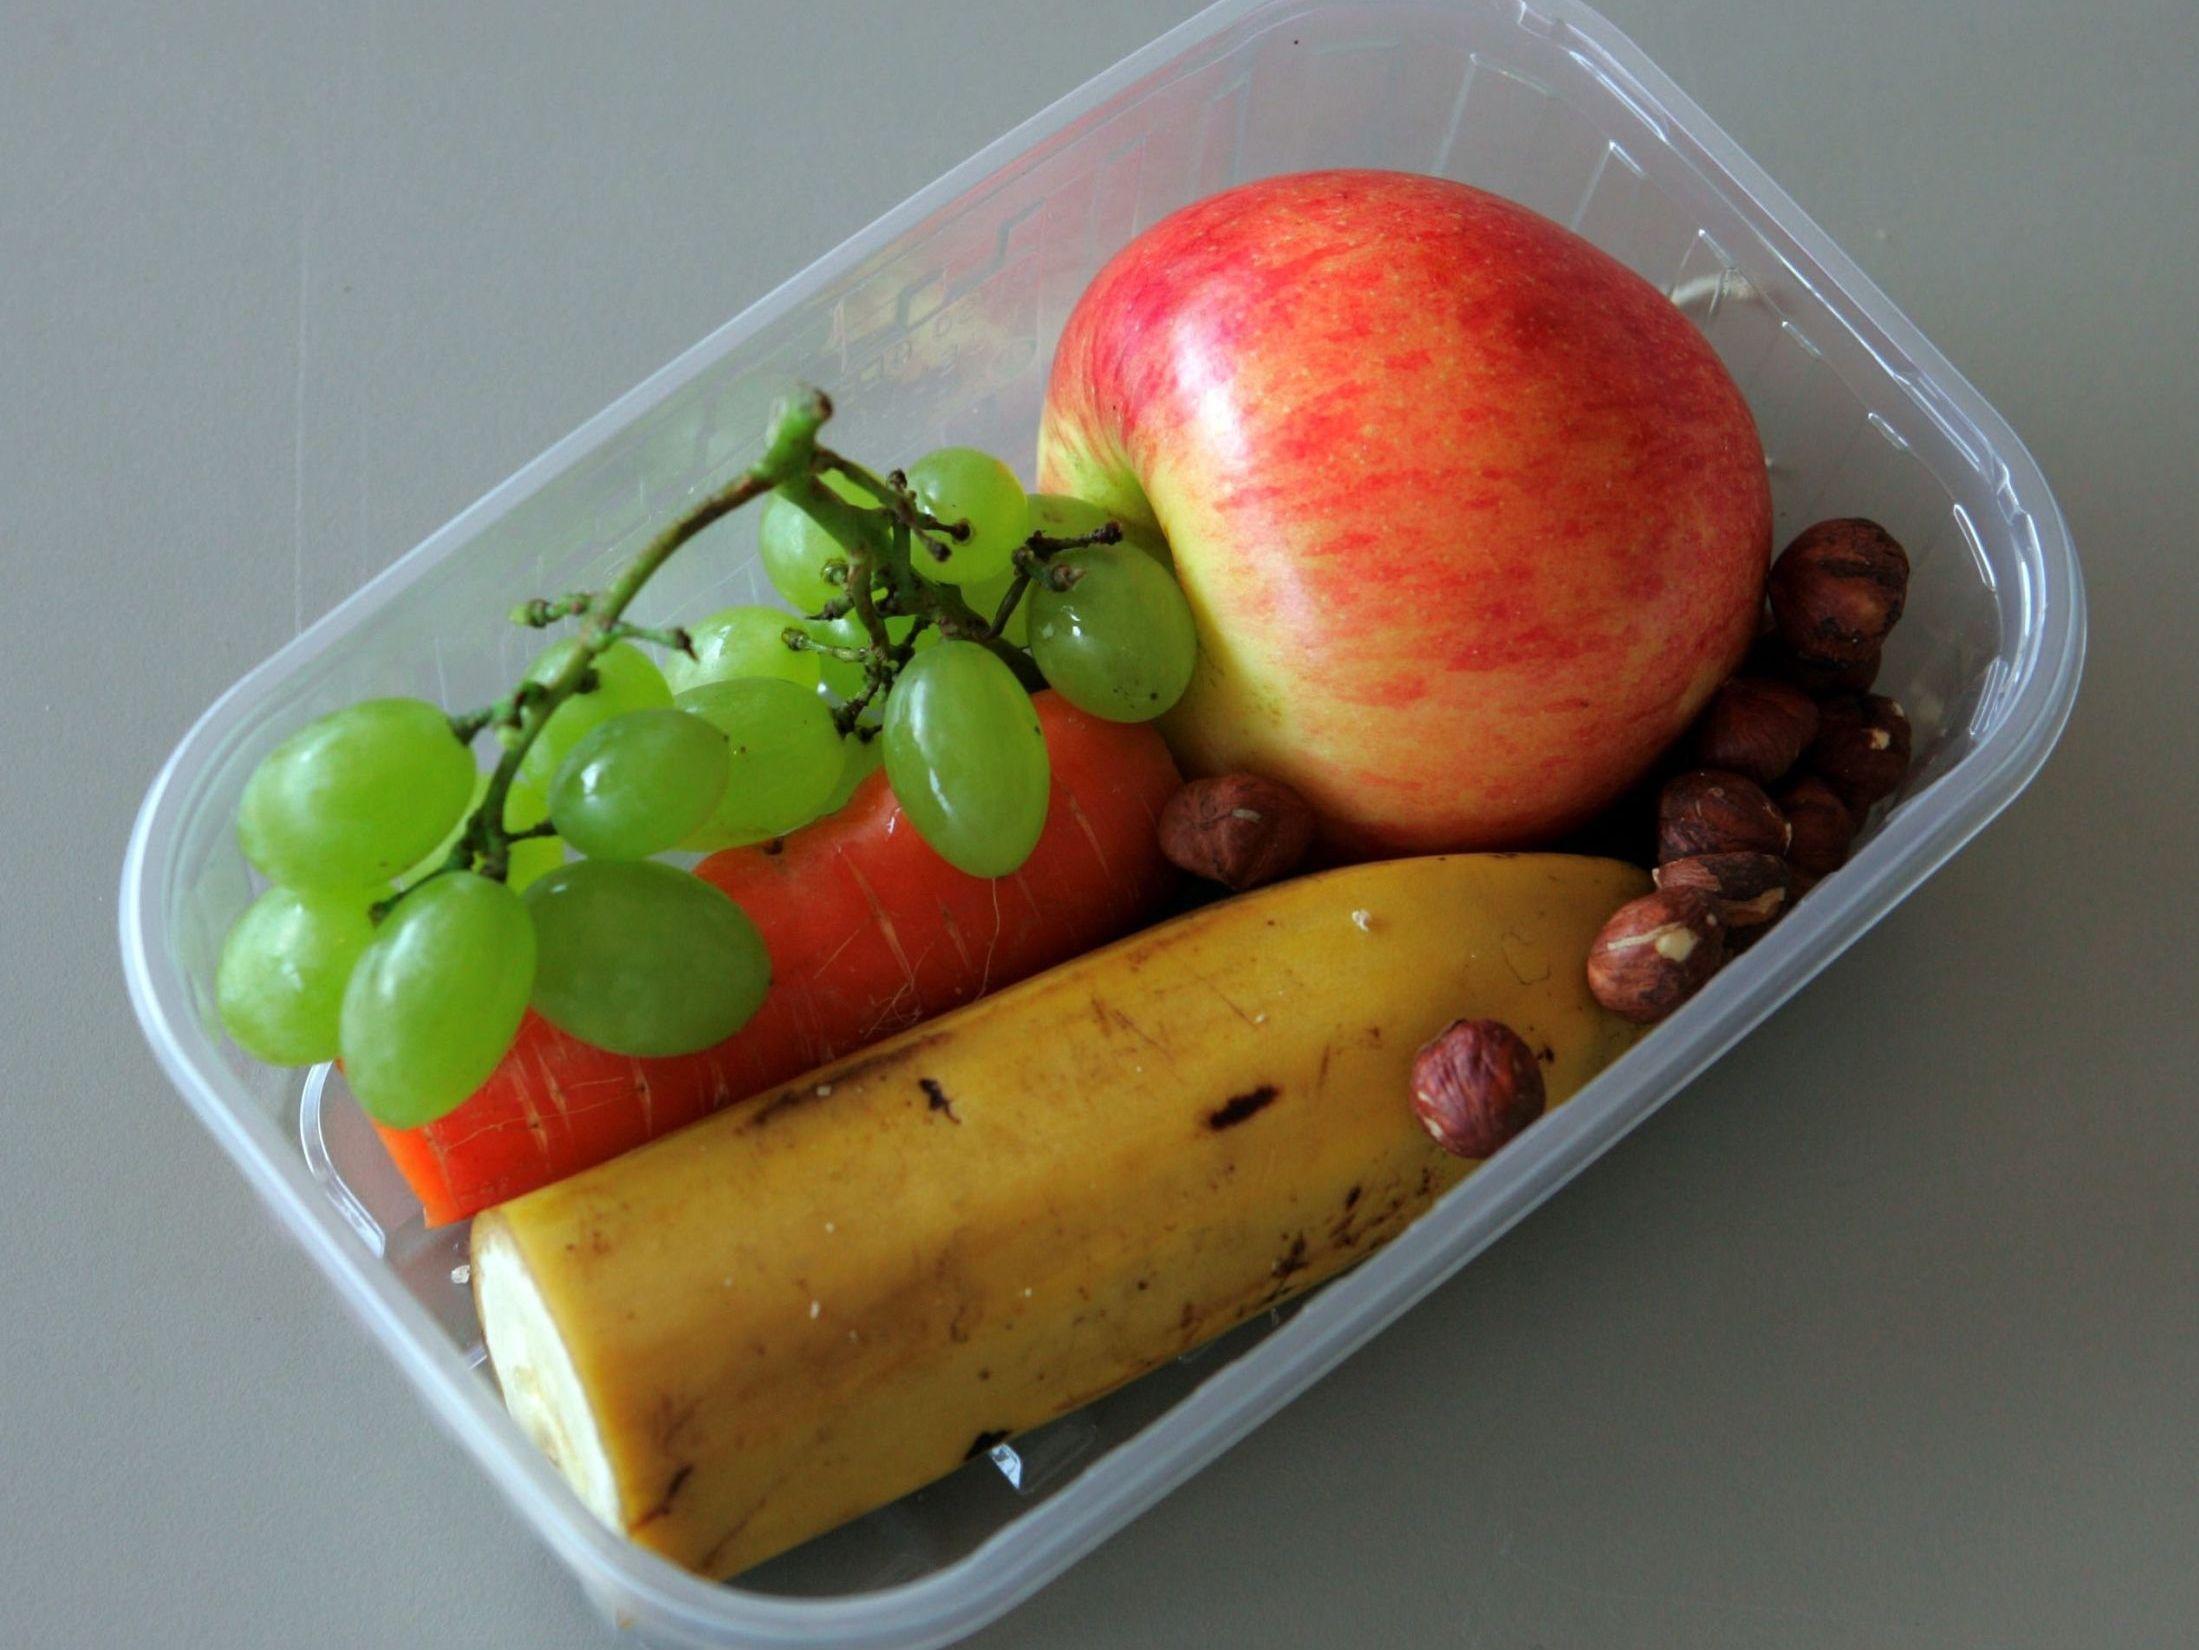 FEM OM DAGEN: Norske barn spiser bare halvparten av den anbefalte dosen med frukt og grønt daglig. Foto: Bjørn Aslaksen